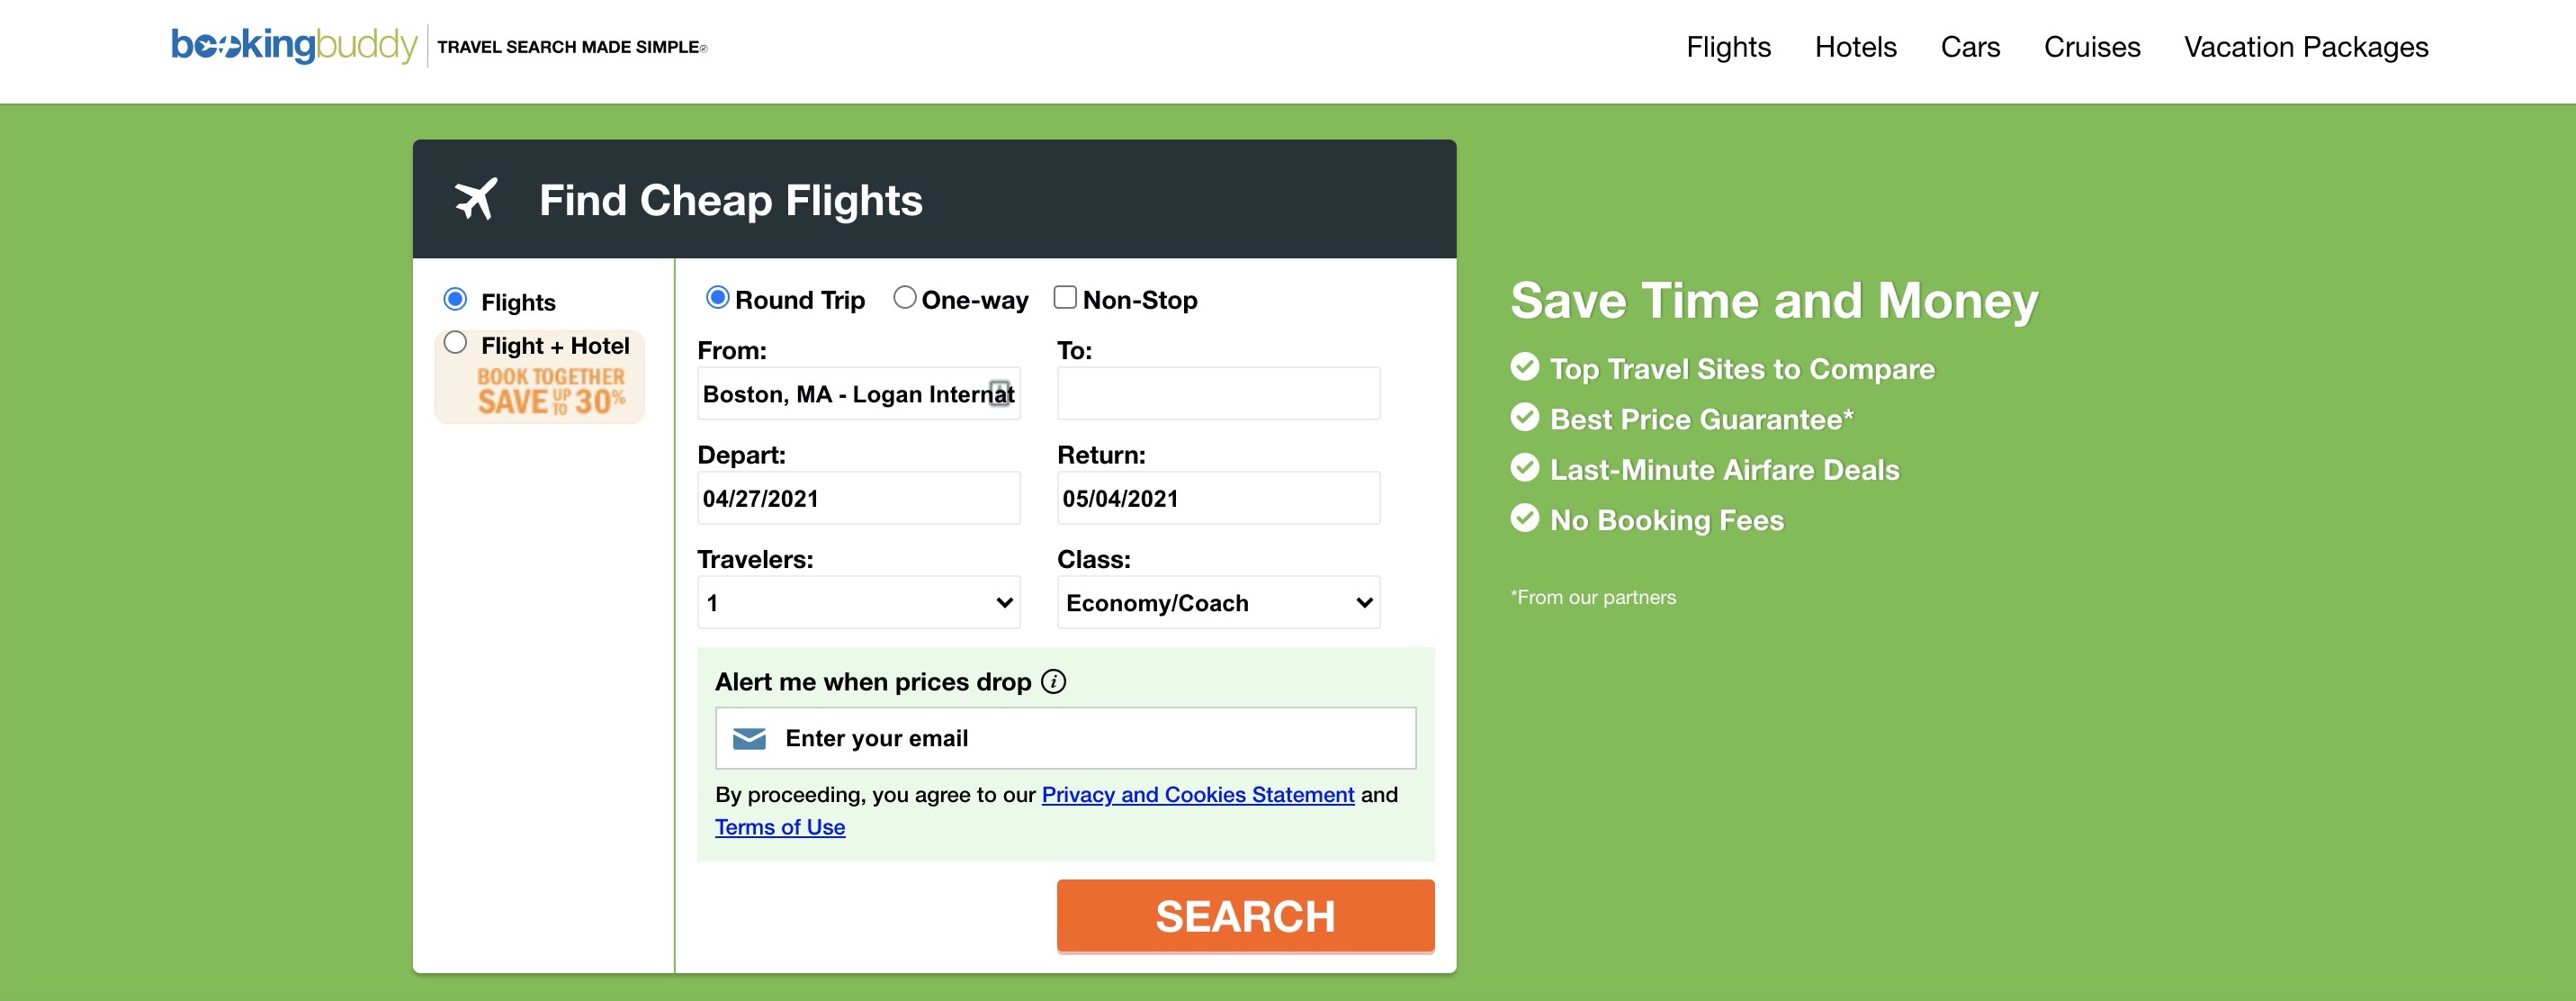 Mejores sitios de búsqueda de vuelo (para reservar tarifas aéreas baratas en 2021) - 9